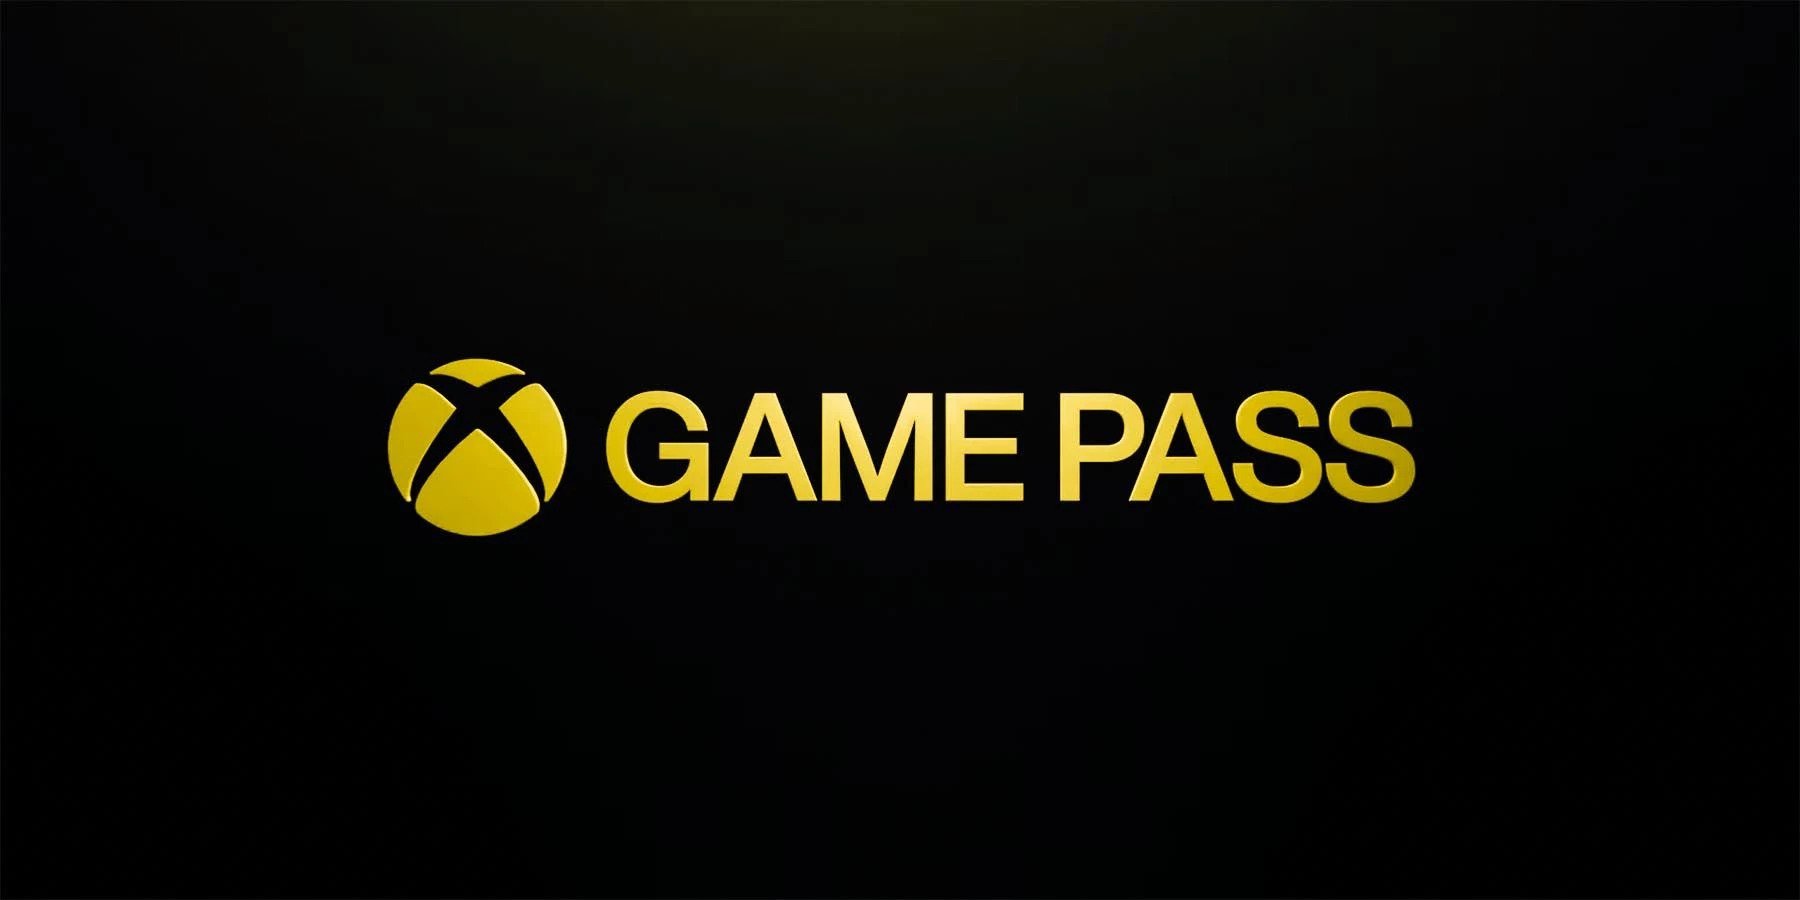 Команда Xbox подтвердила, что новых игр в Game Pass в этом году больше не будет: с сайта NEWXBOXONE.RU